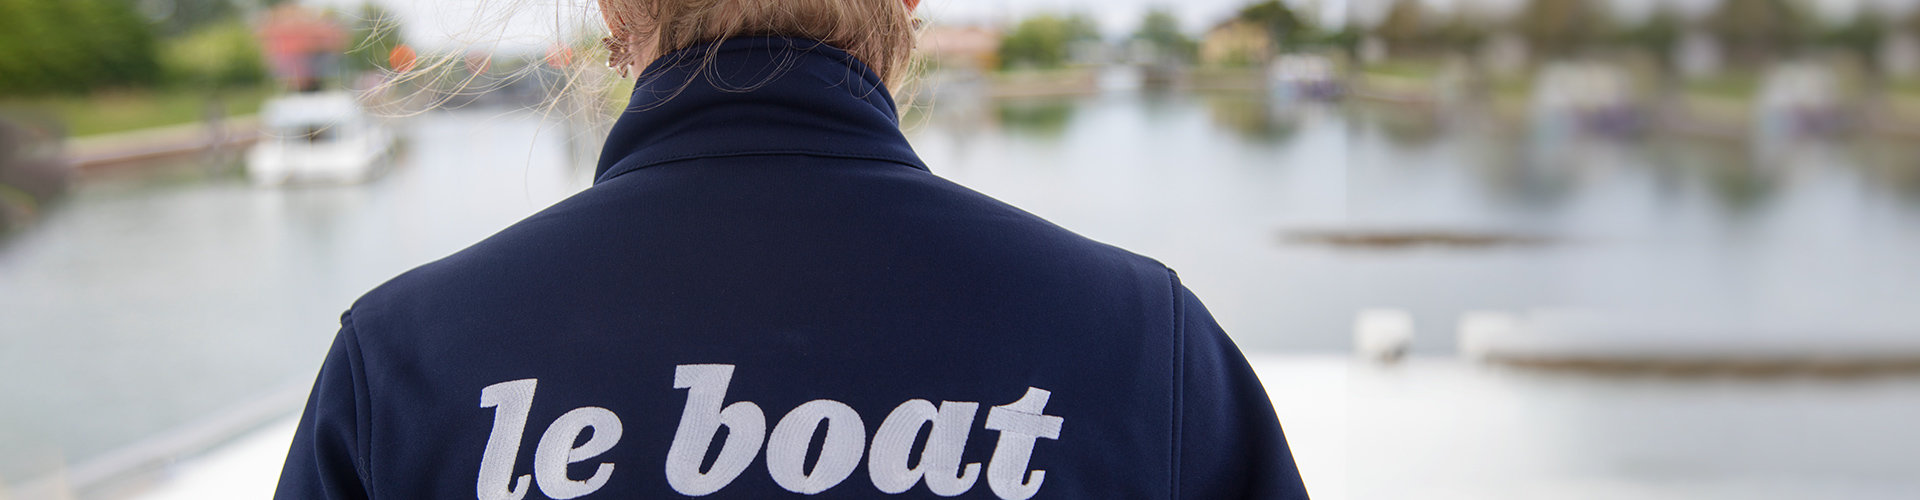 Trabaja con el líder del sector - Carreras profesionales - Le Boat